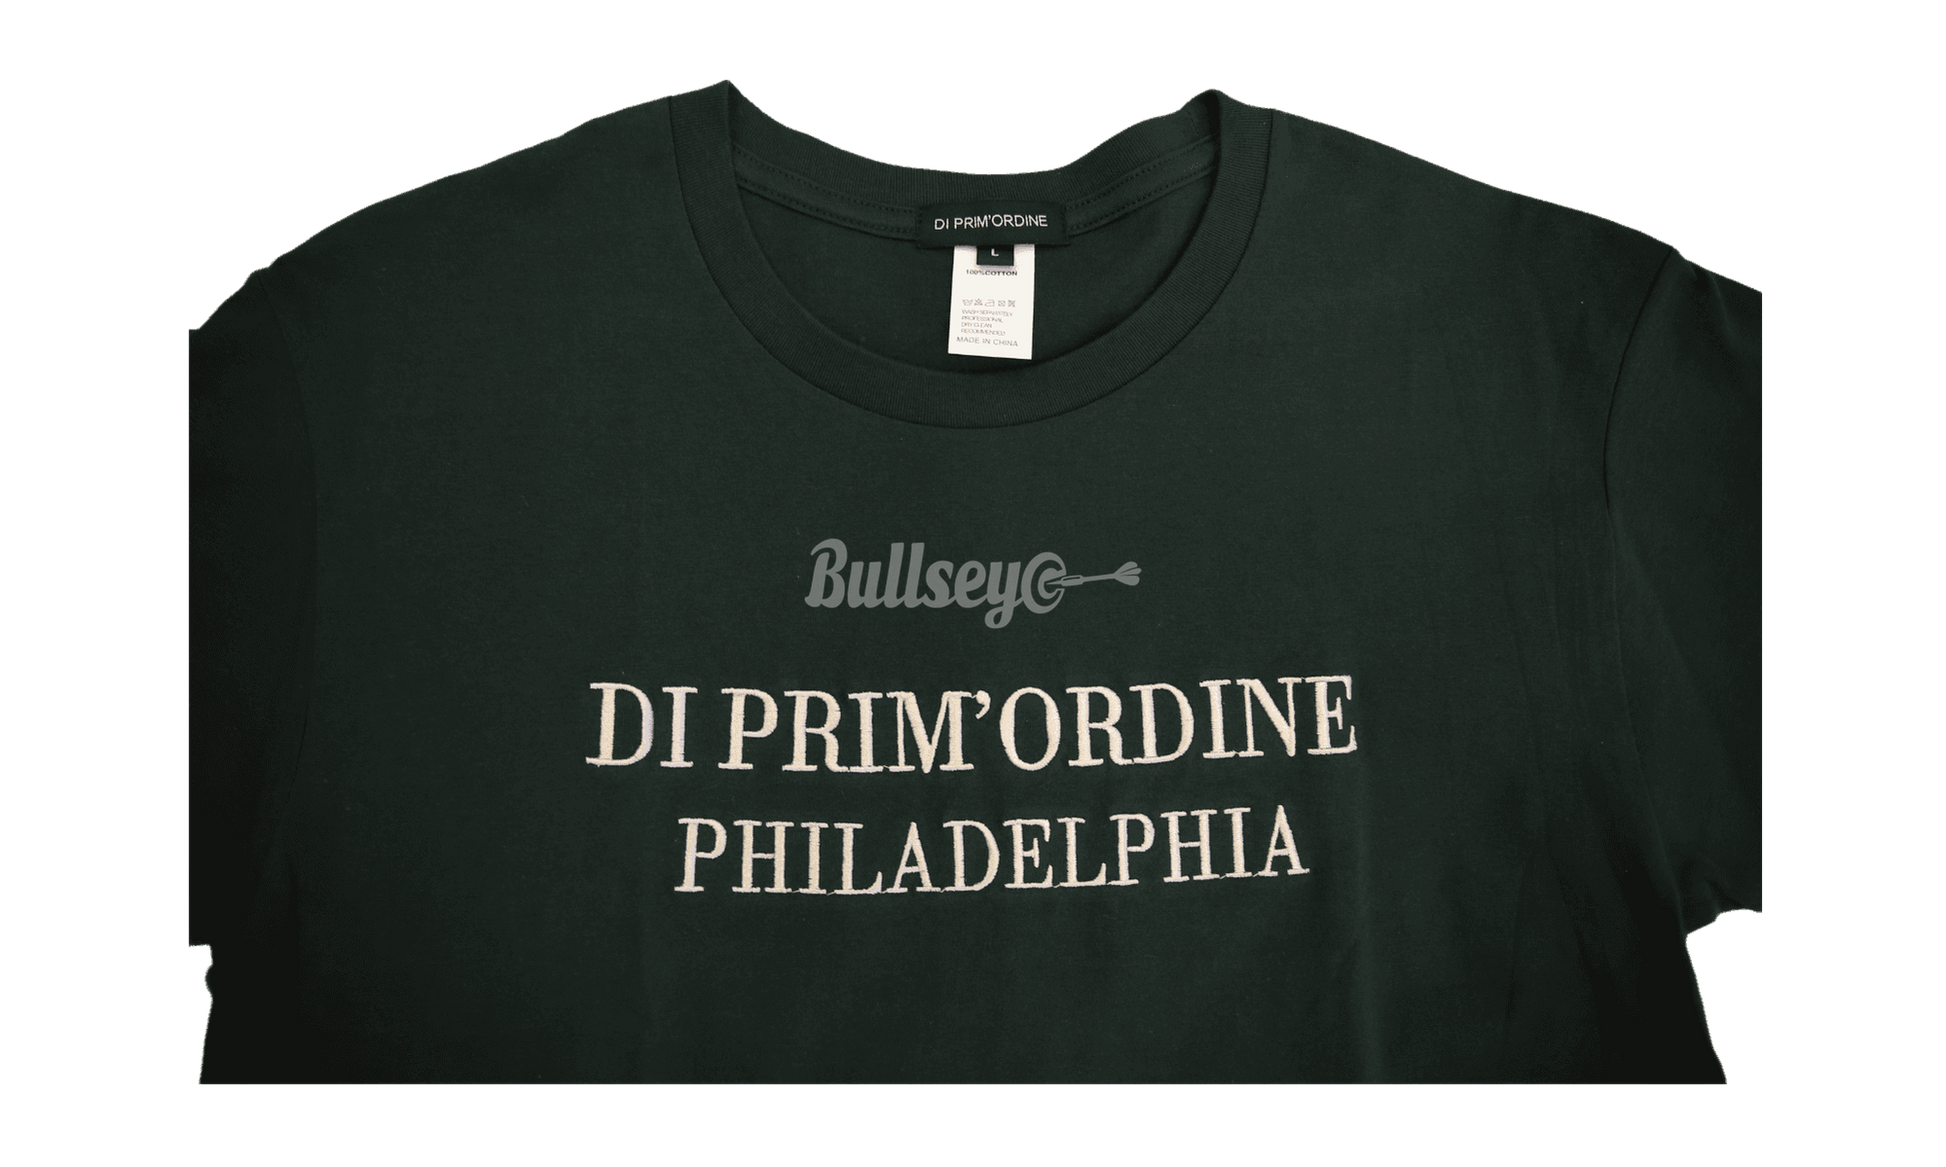 Di Prime'Ordine Worldwide T-Shirt "Philadelphia" - Bullseye Sneaker Boutique